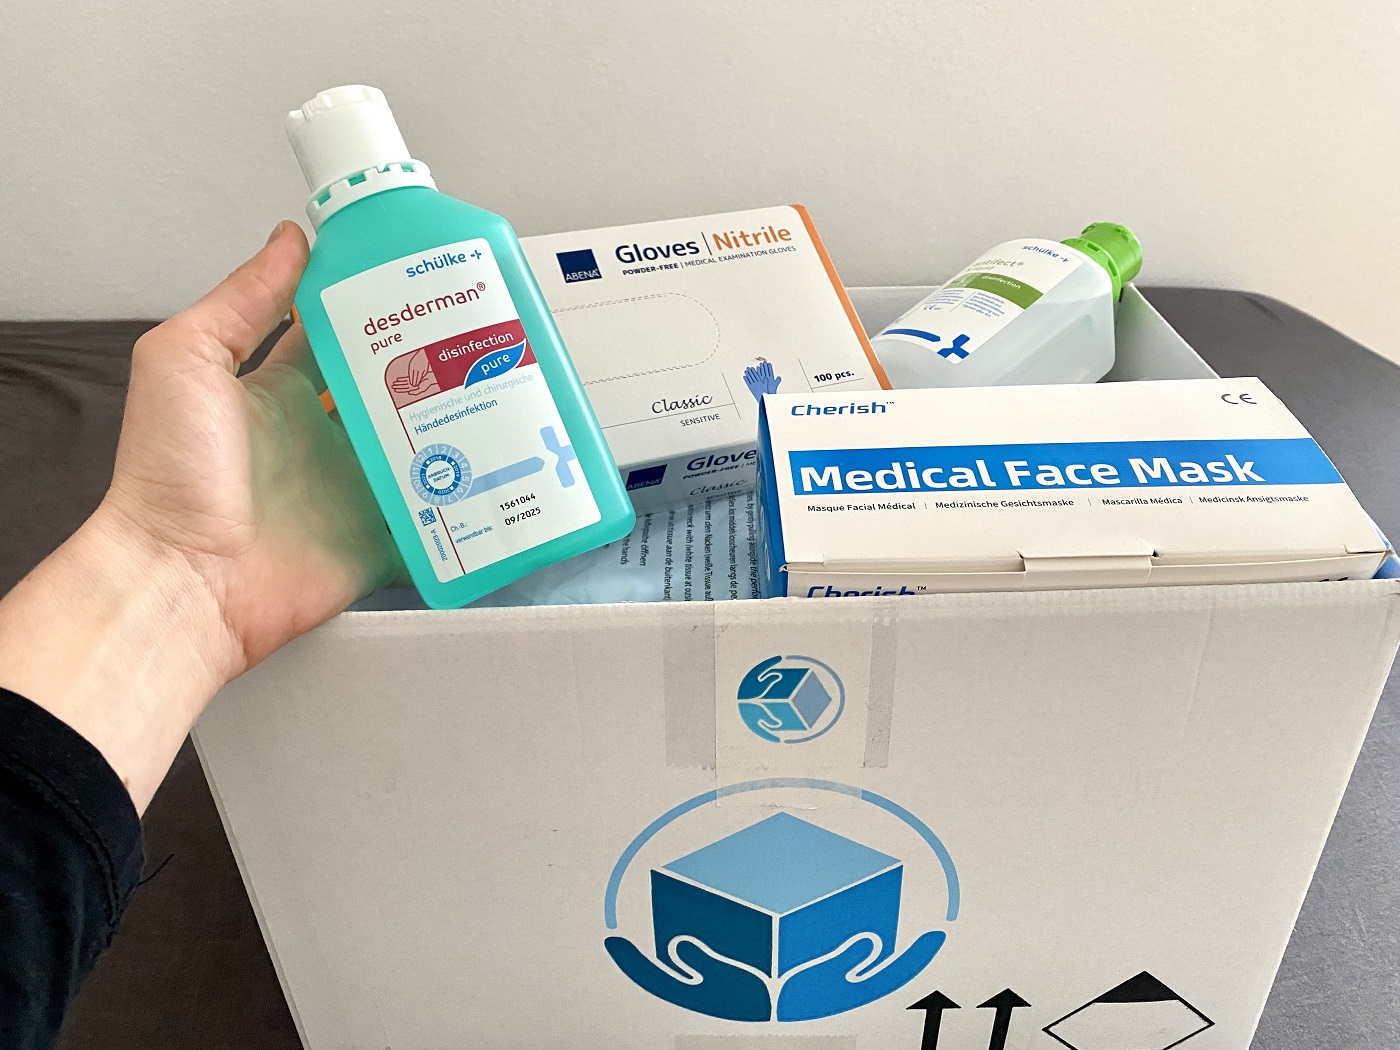 PflegeBox 4 - Unterstützung bei der häuslichen Pflege durch die PflegeBox